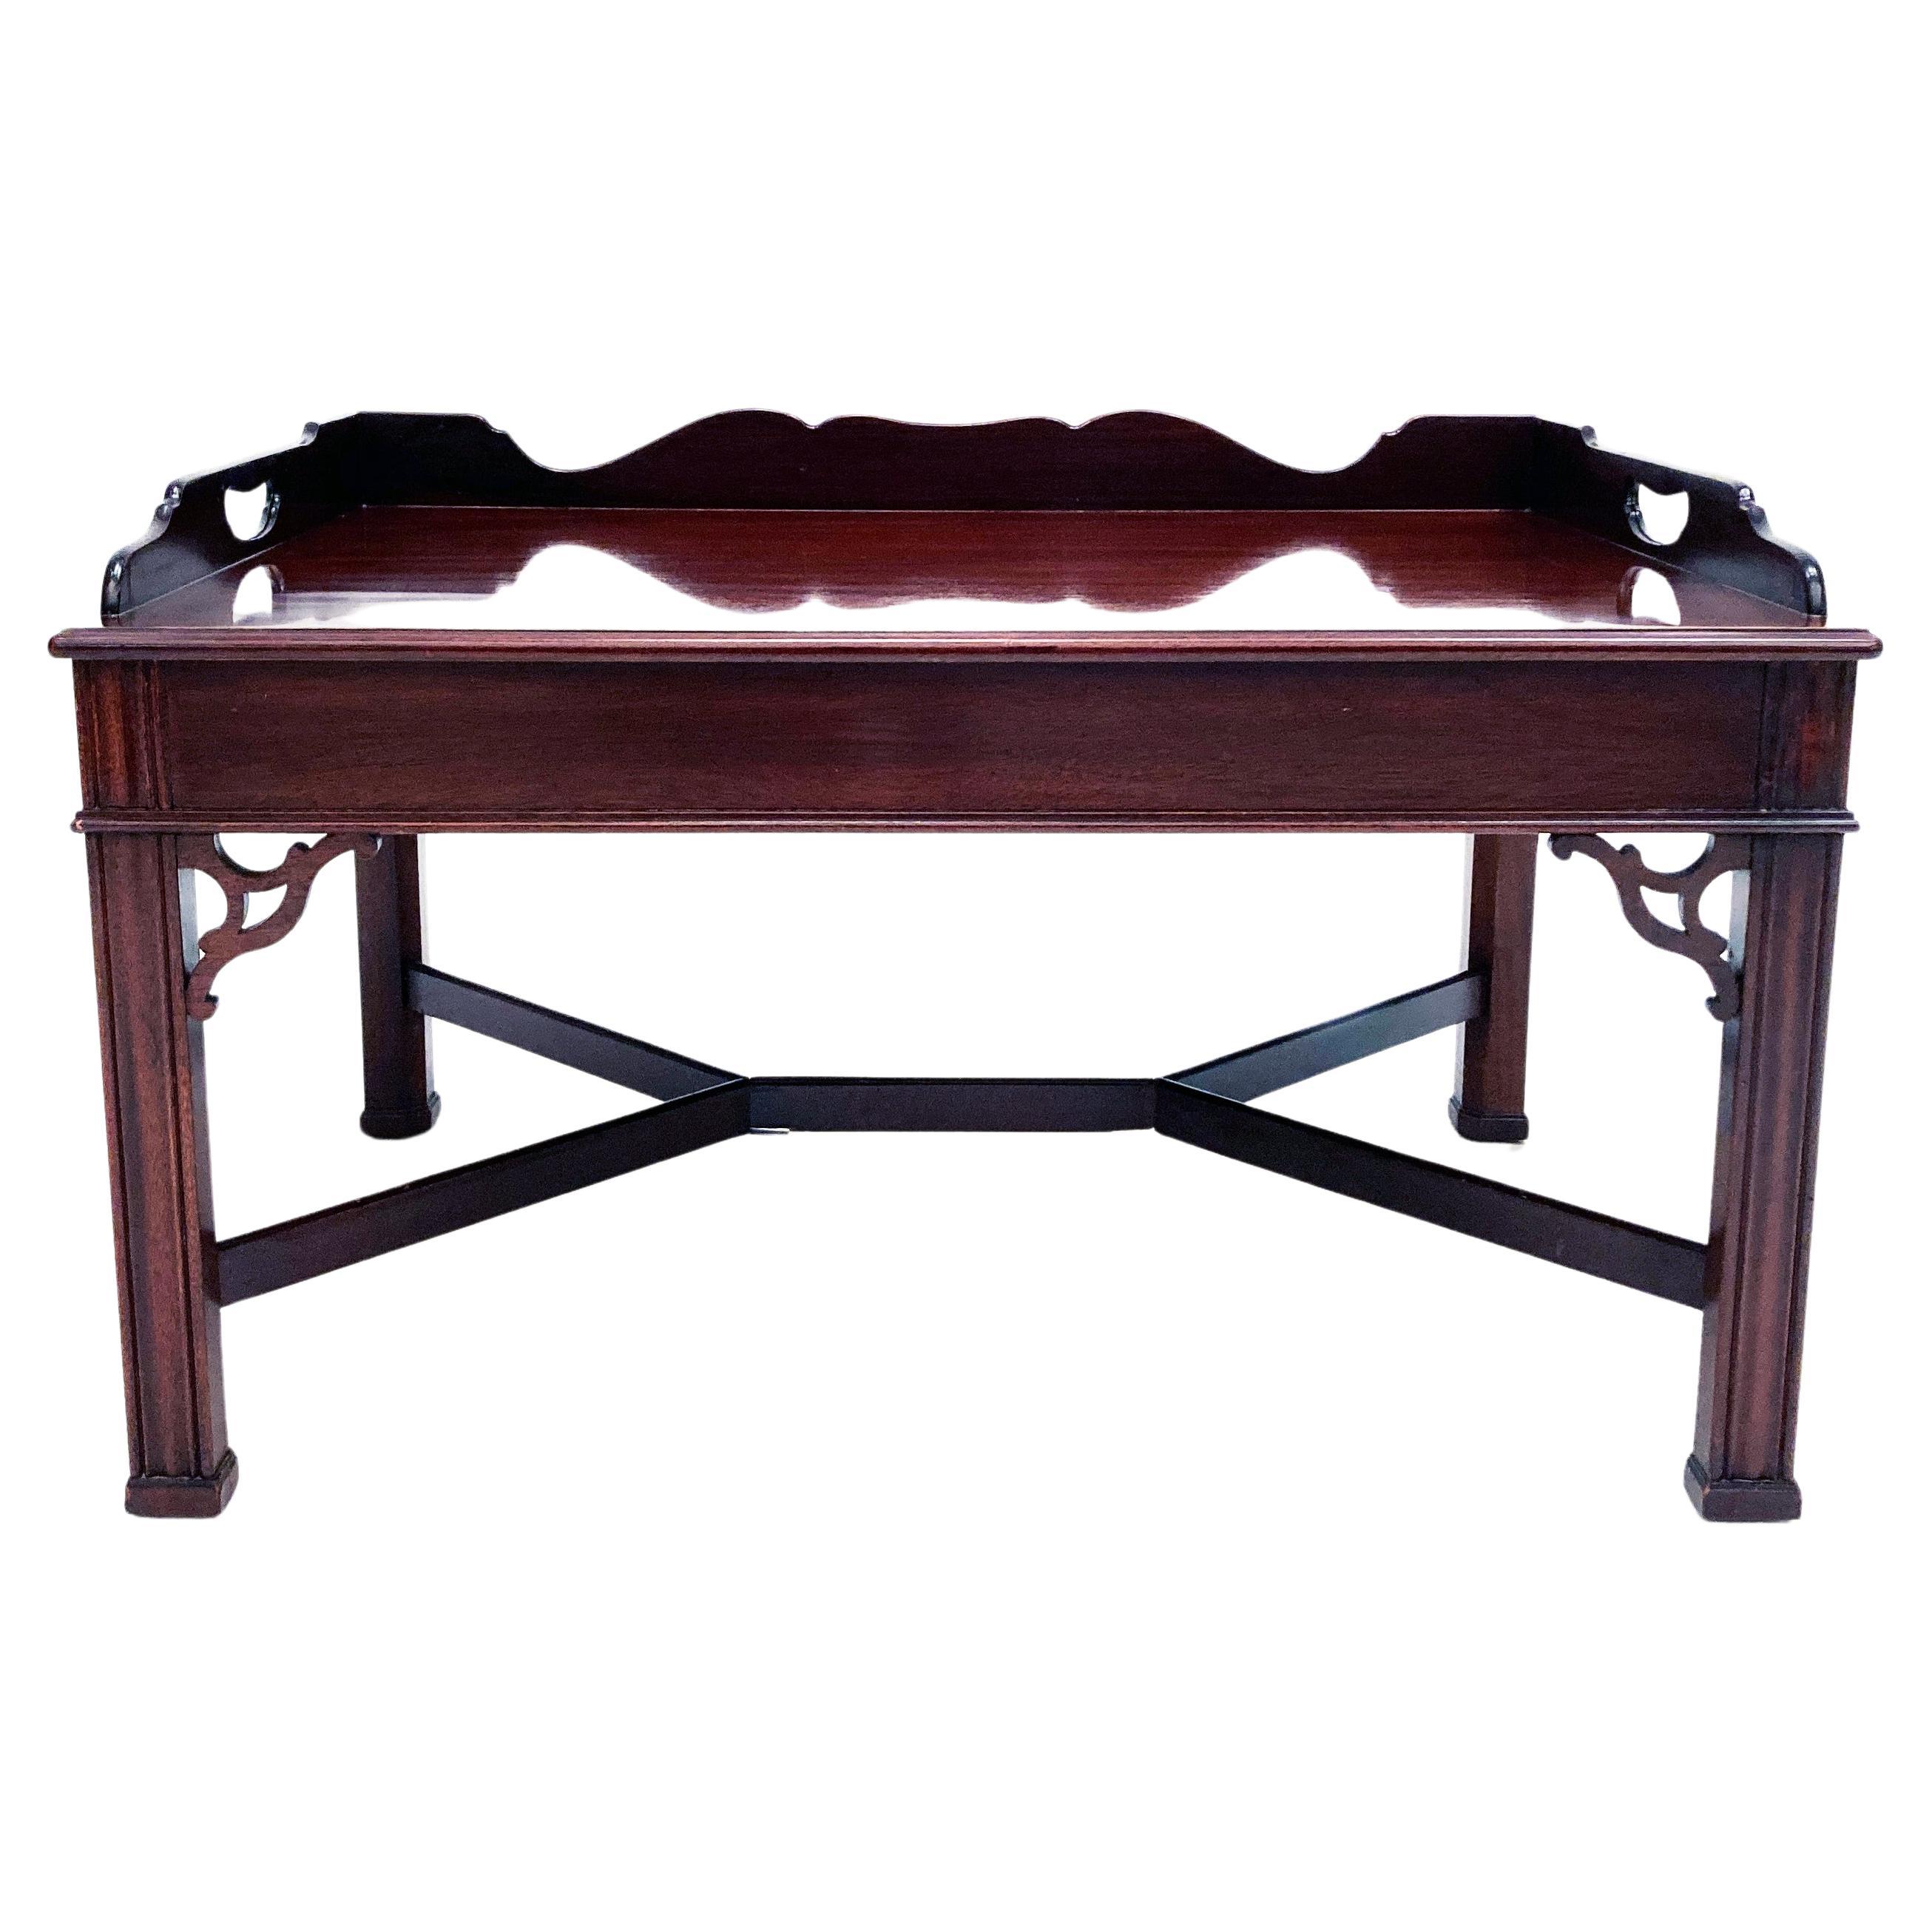 Table basse à plateau de majordome de style Chippendale avec galerie festonnée